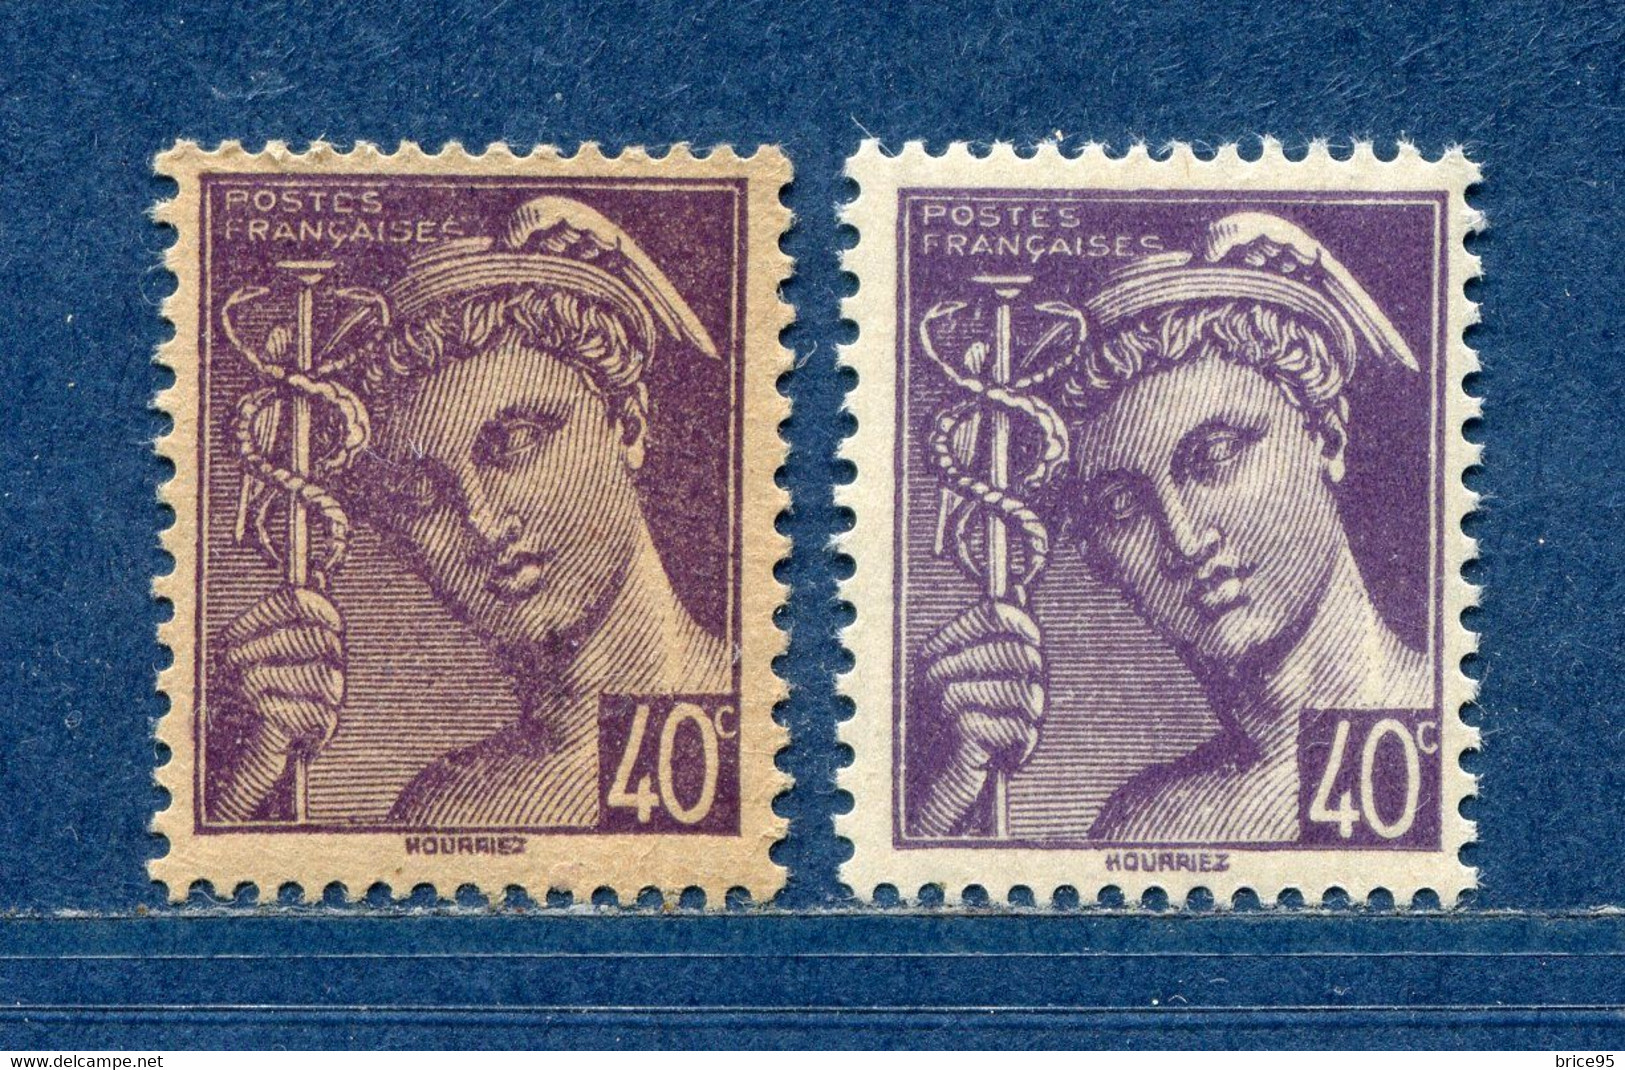 ⭐ France - Variété - YT N° 548 - Couleurs - Pétouilles - Neuf Sans Charnière - 1942 ⭐ - Unused Stamps